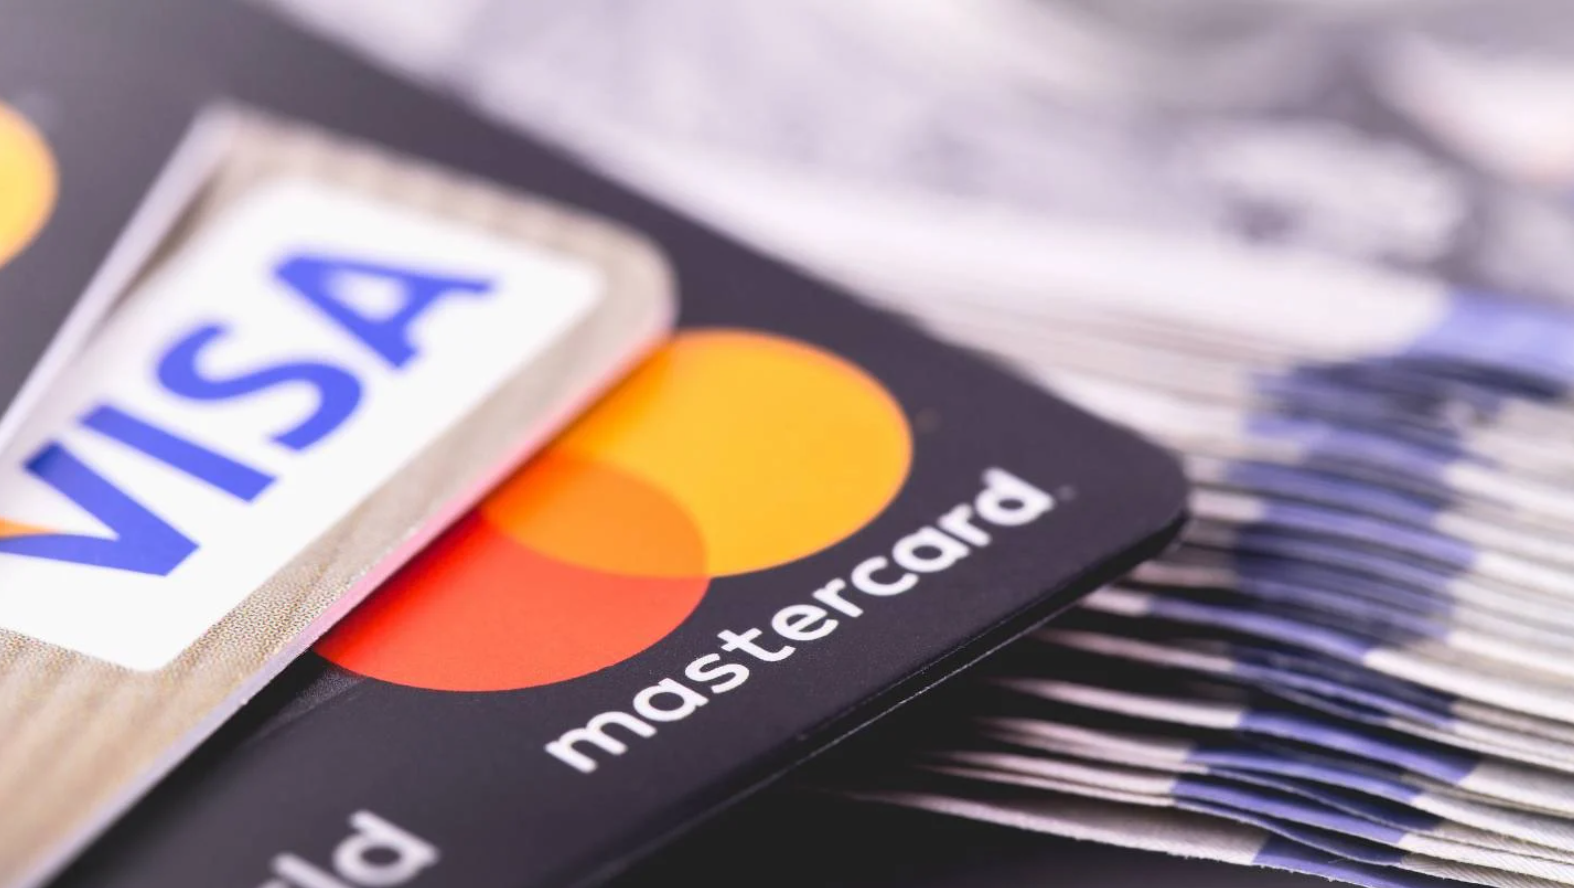 Etats-Unis: Visa et Mastercard envisagent d'augmenter les frais liés aux cartes de crédit pour les commerçants